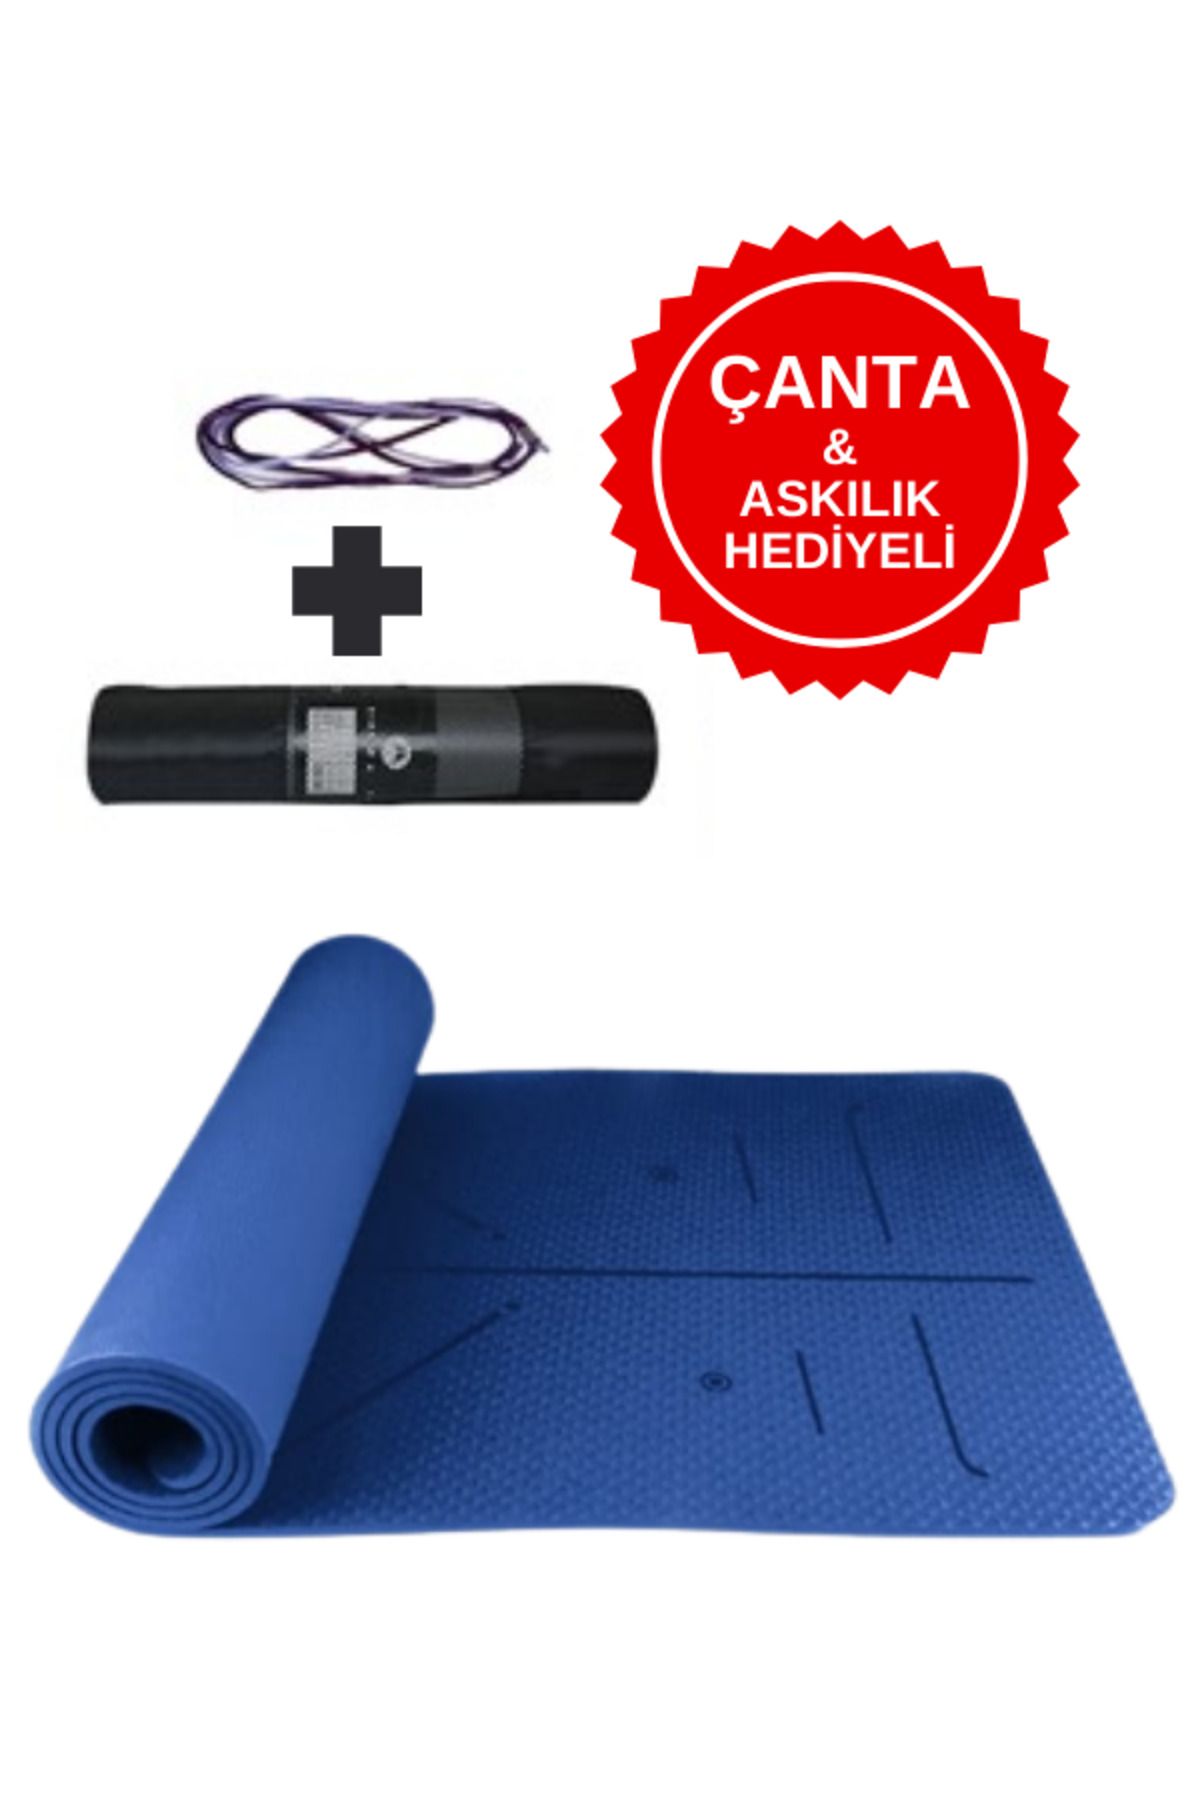 Genel Markalar Ekstra Konforlu Yoga Matı - 8mm Kalınlık, Ekolojik Tpe Pilates Egzersiz Minderi Koyu Lacivert